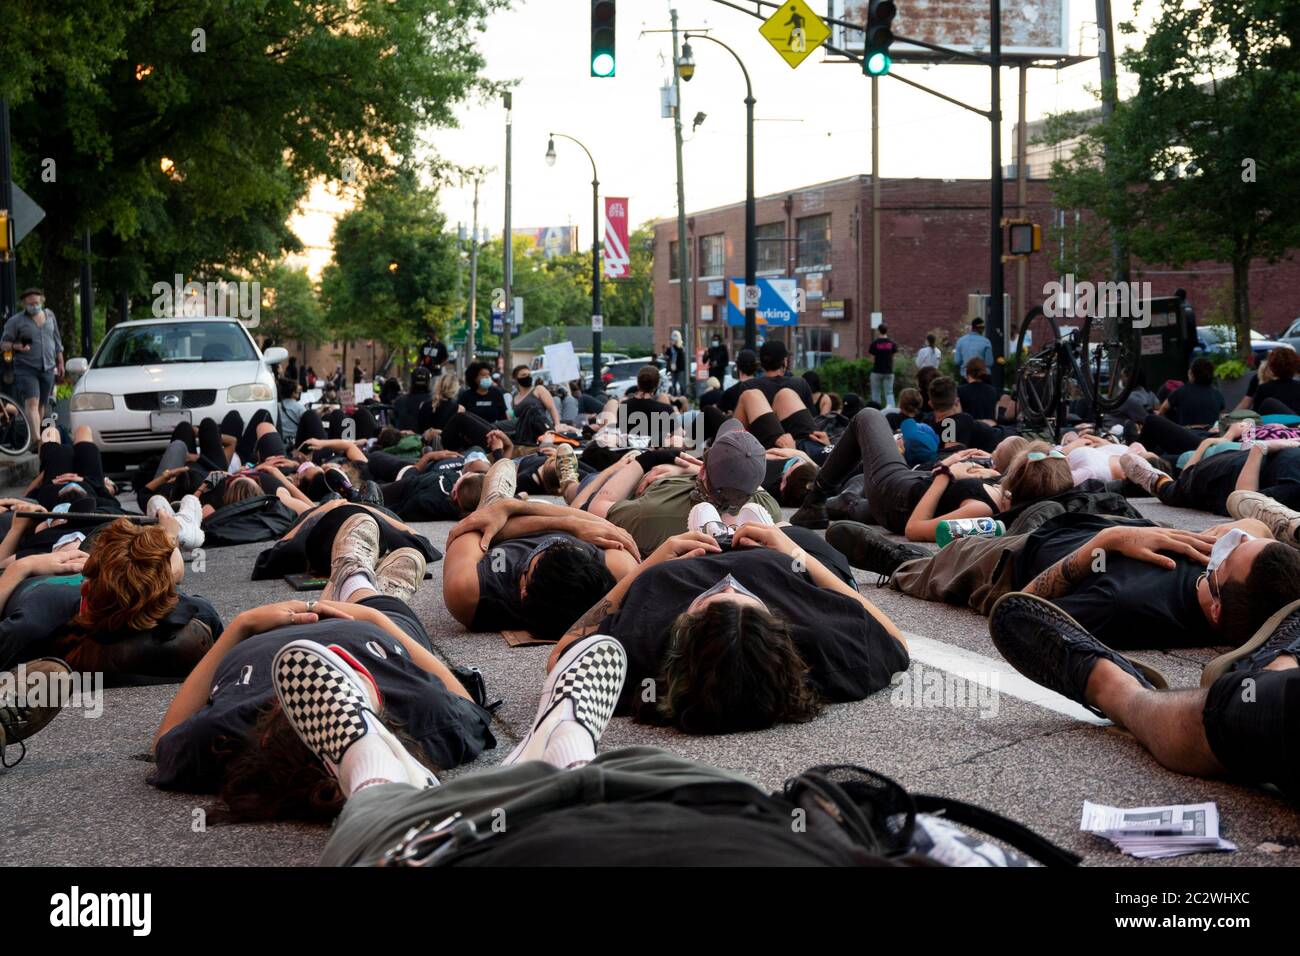 Atlanta, EE.UU. 17 de junio de 2020. Los manifestantes se sentaron en la calle fuera de la sede de la policía en Atlanta, EE.UU., en respuesta a los recientes asesinatos de negros por parte de la policía. Crédito: Micah Casella/Alamy Live News. Foto de stock